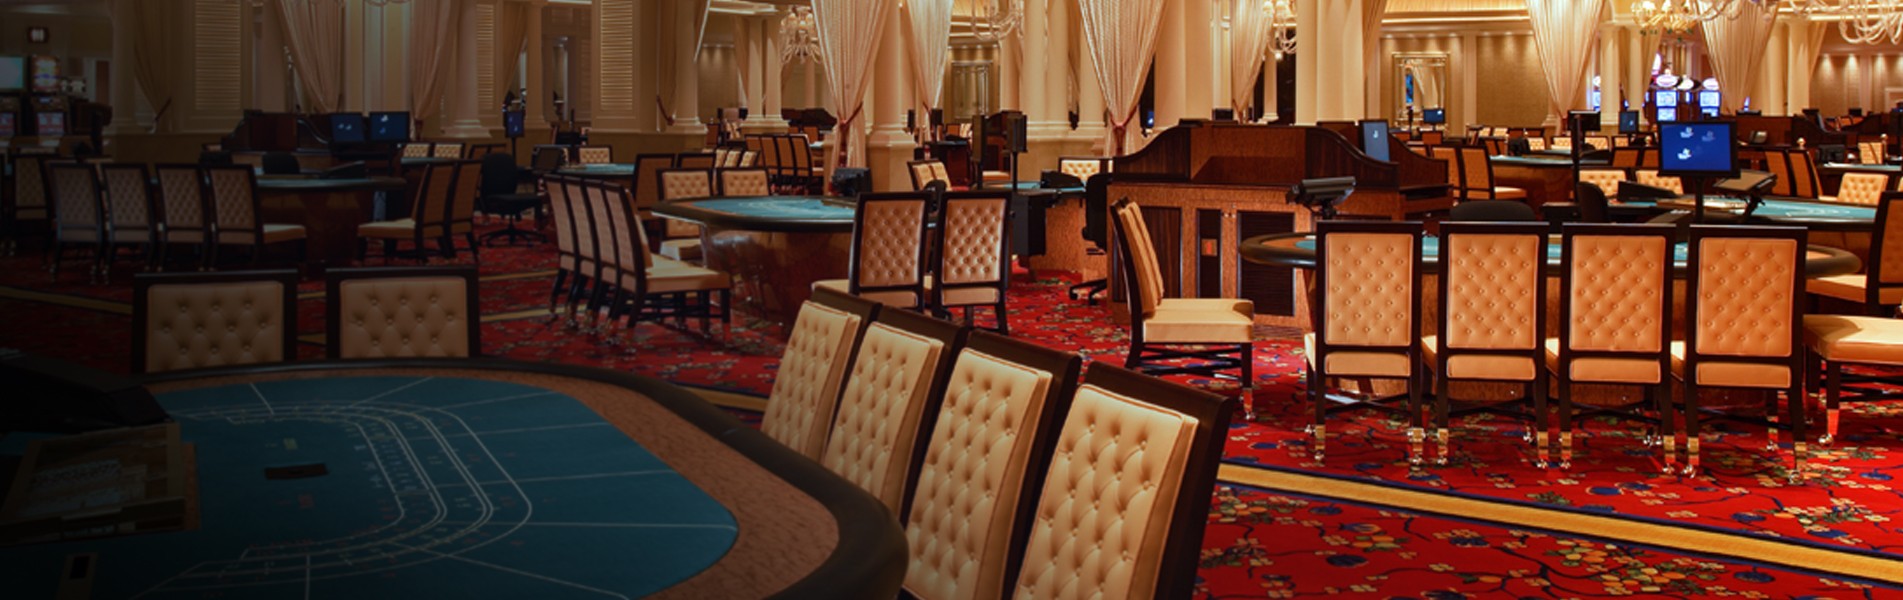 Wynn Casino Macau 2